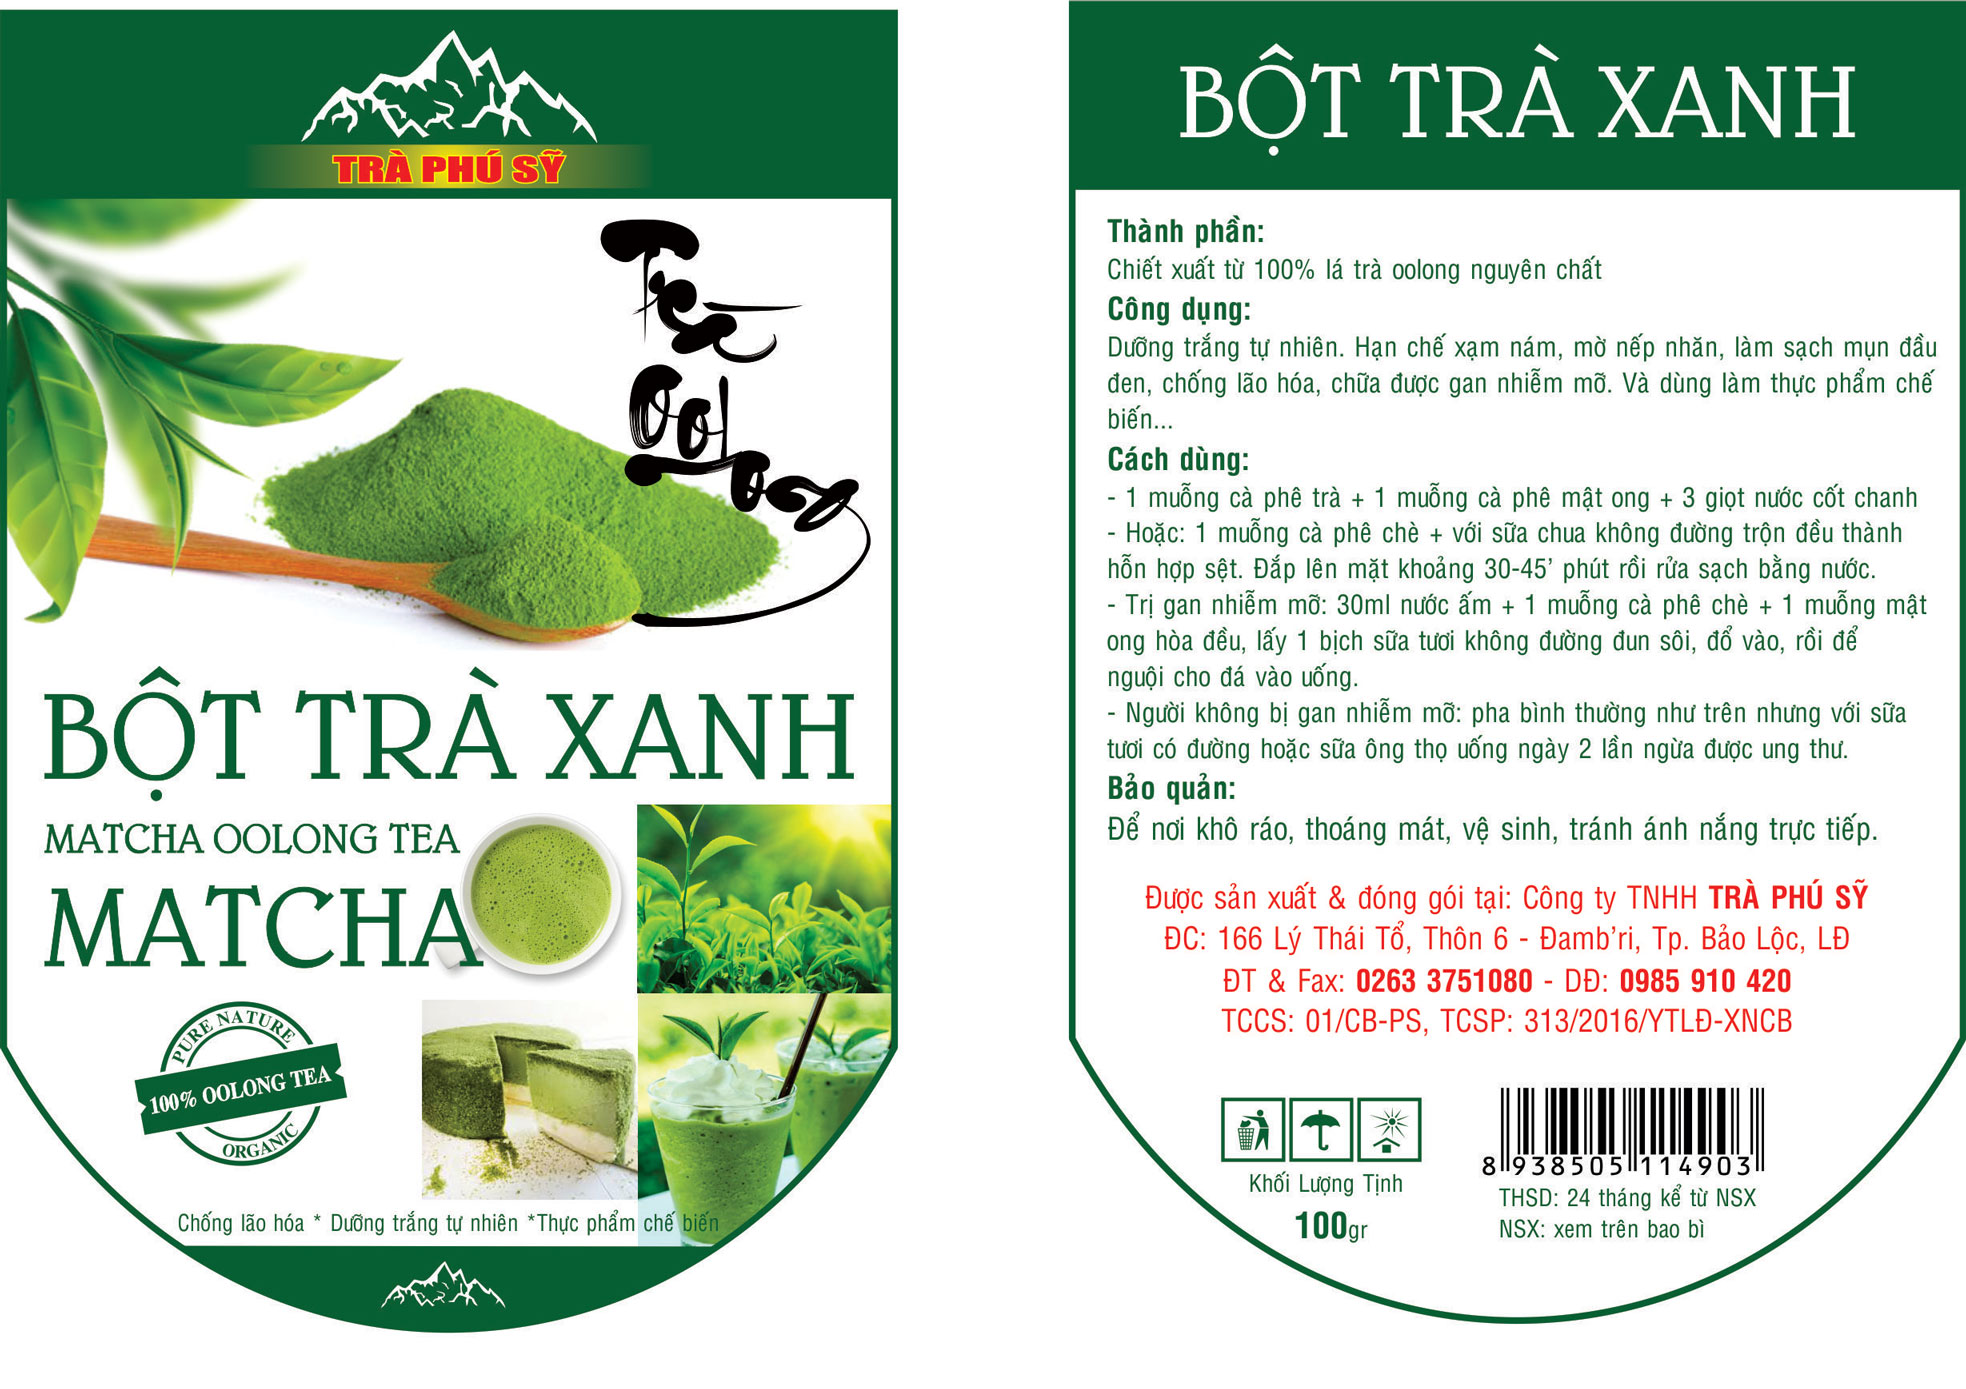 Bột trà xanh - Trà Phú Sỹ - Công Ty TNHH Trà Phú Sỹ